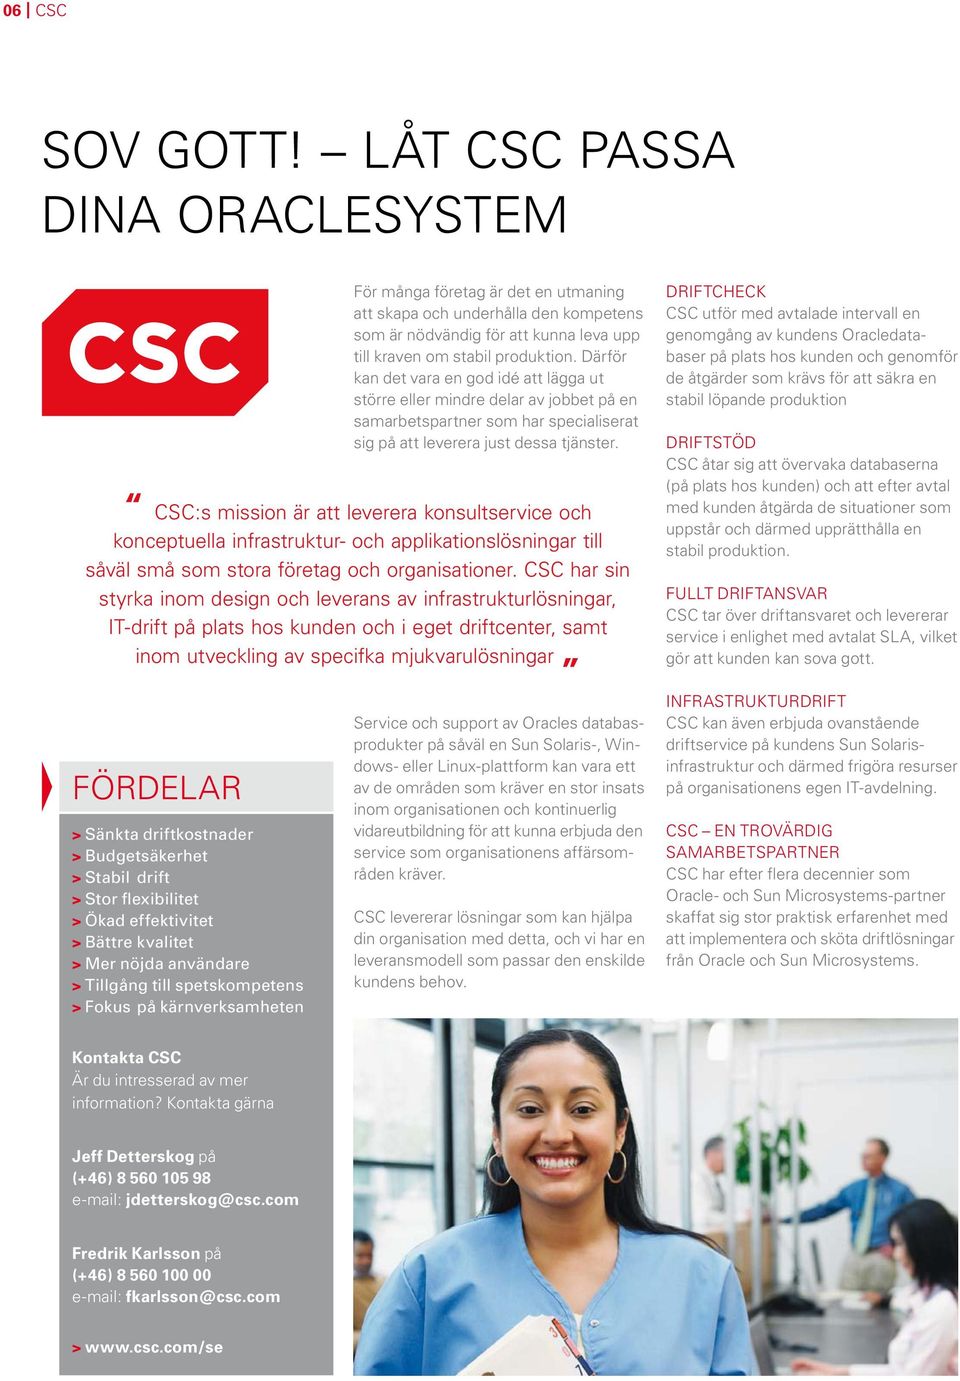 CSC:s mission är att leverera konsultservice och konceptuella infrastruktur- och applikationslösningar till såväl små som stora företag och organisationer.